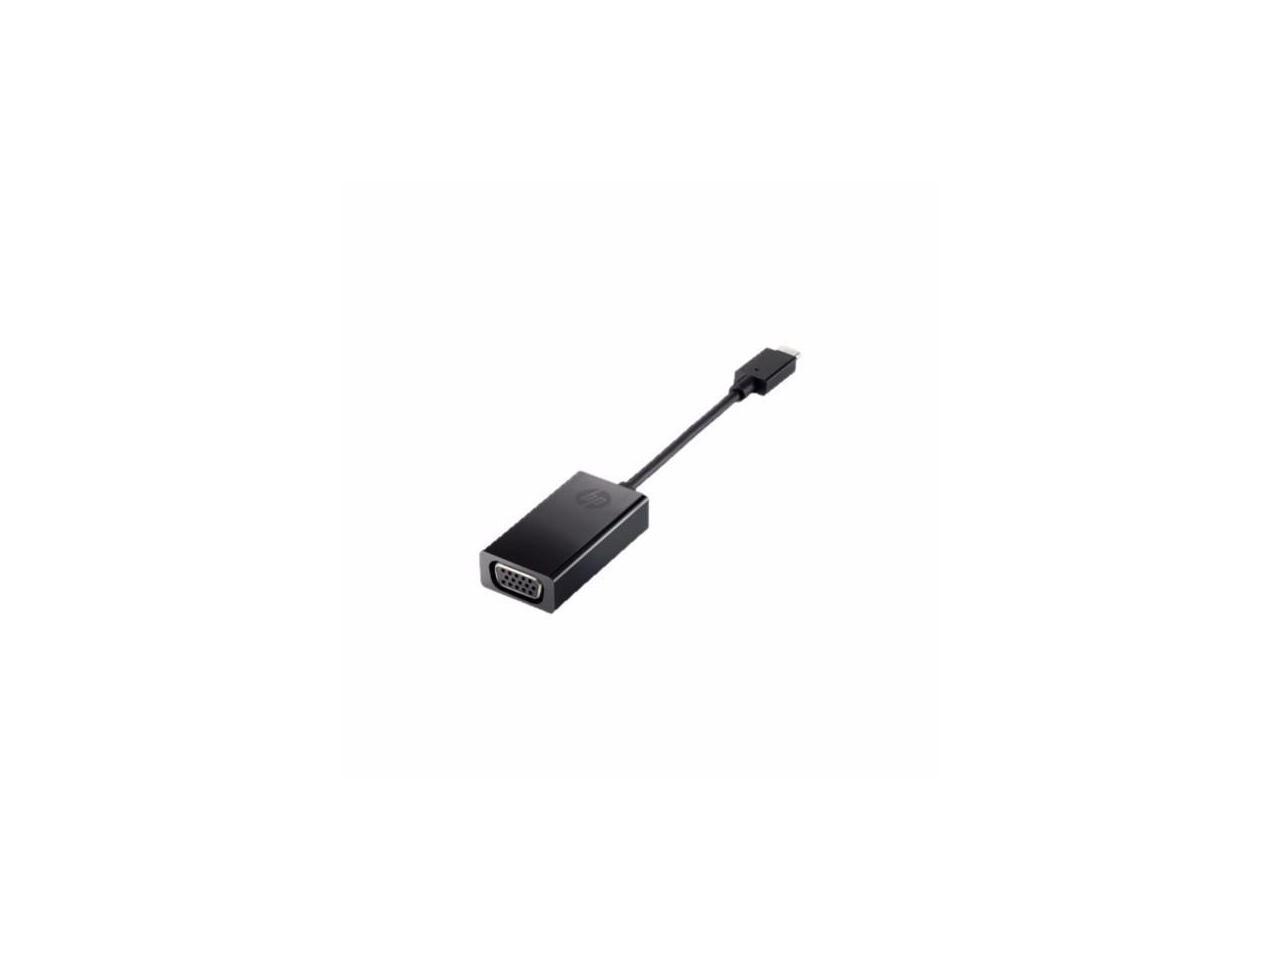 Hp External Video Adapter - Black - Smart Buy - N9K76UT#ABA